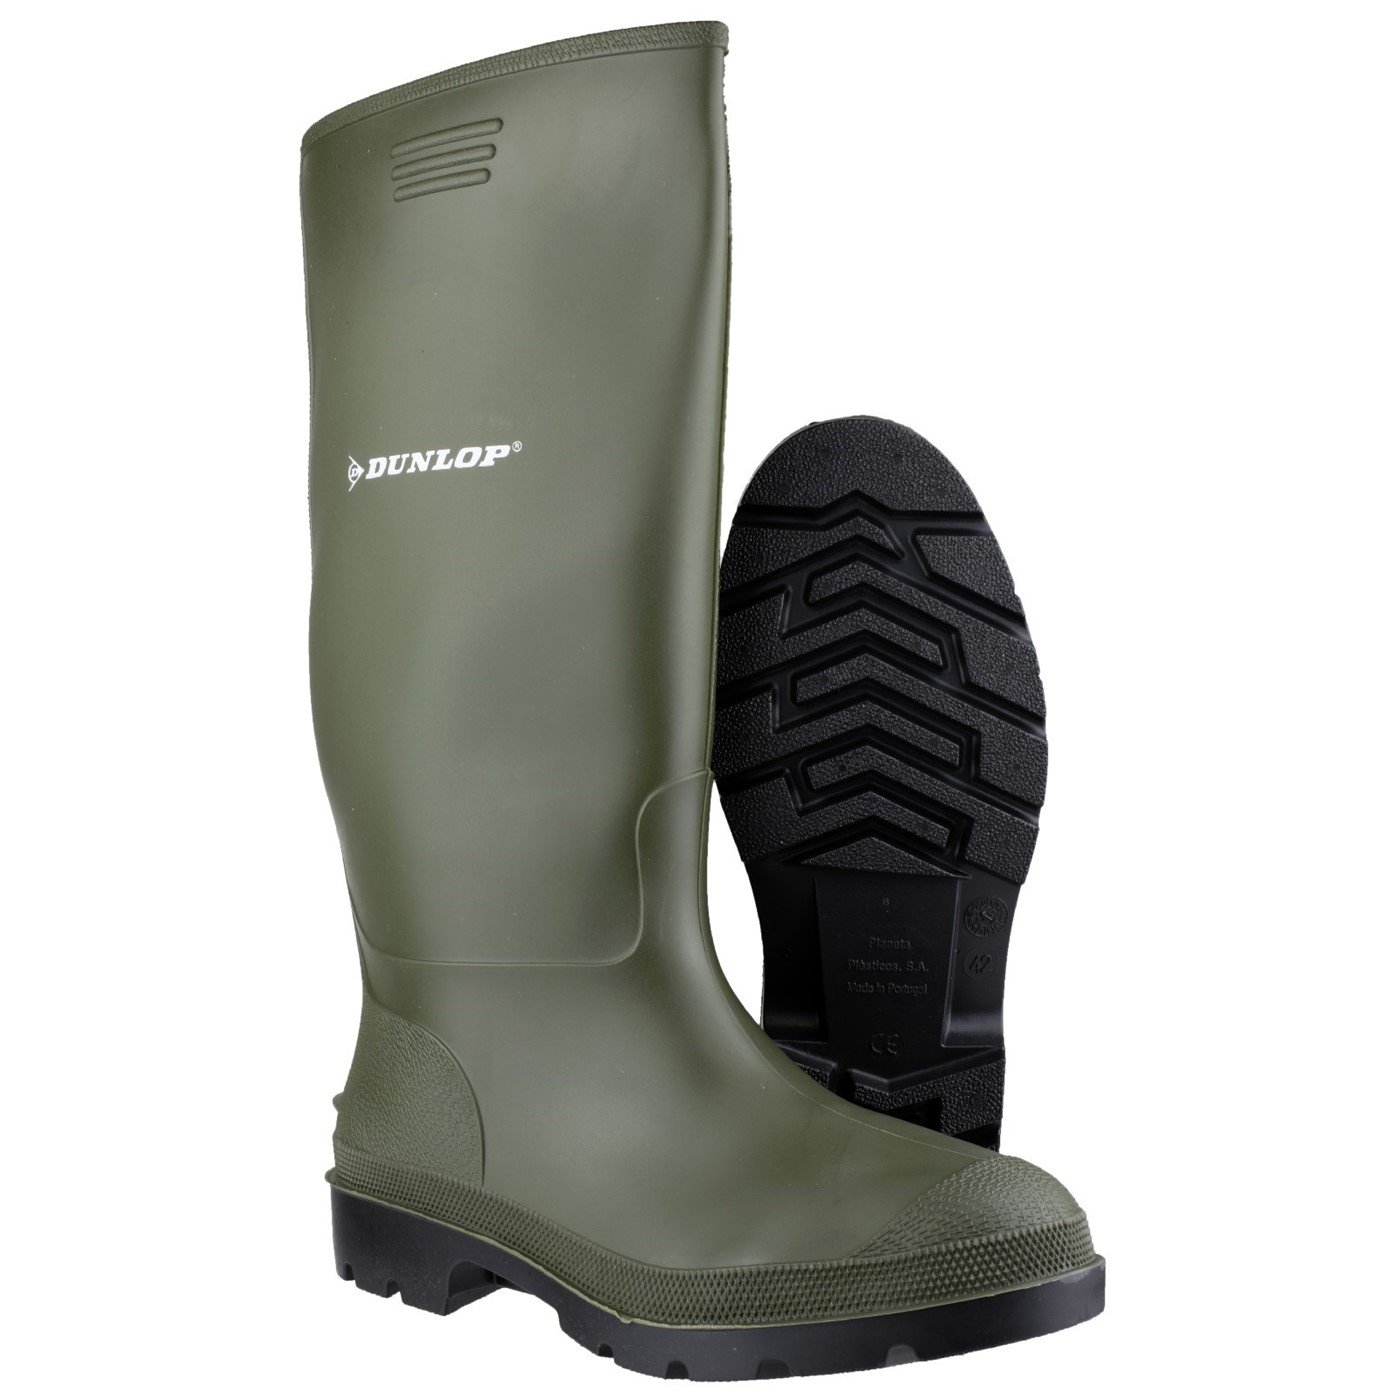 Dunlop Pricemaster Boot, Green, Size 5(38)